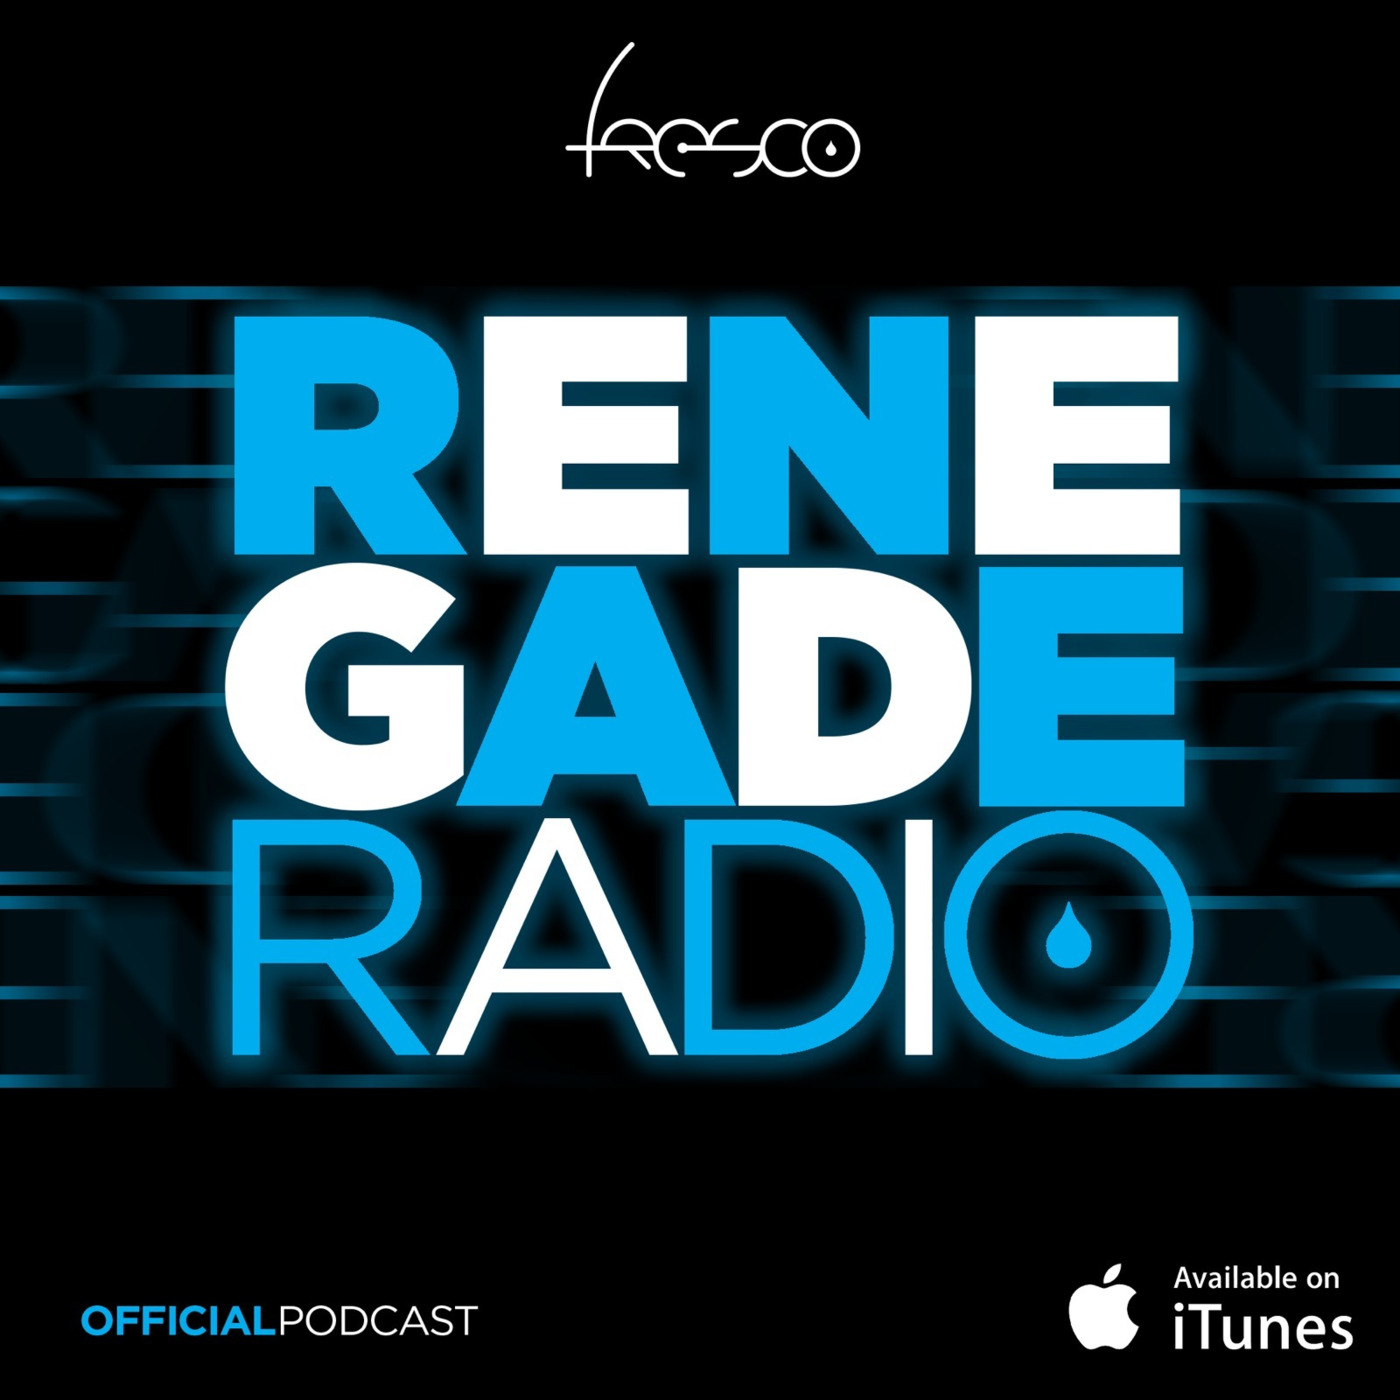 Fresco - Renegade Radio